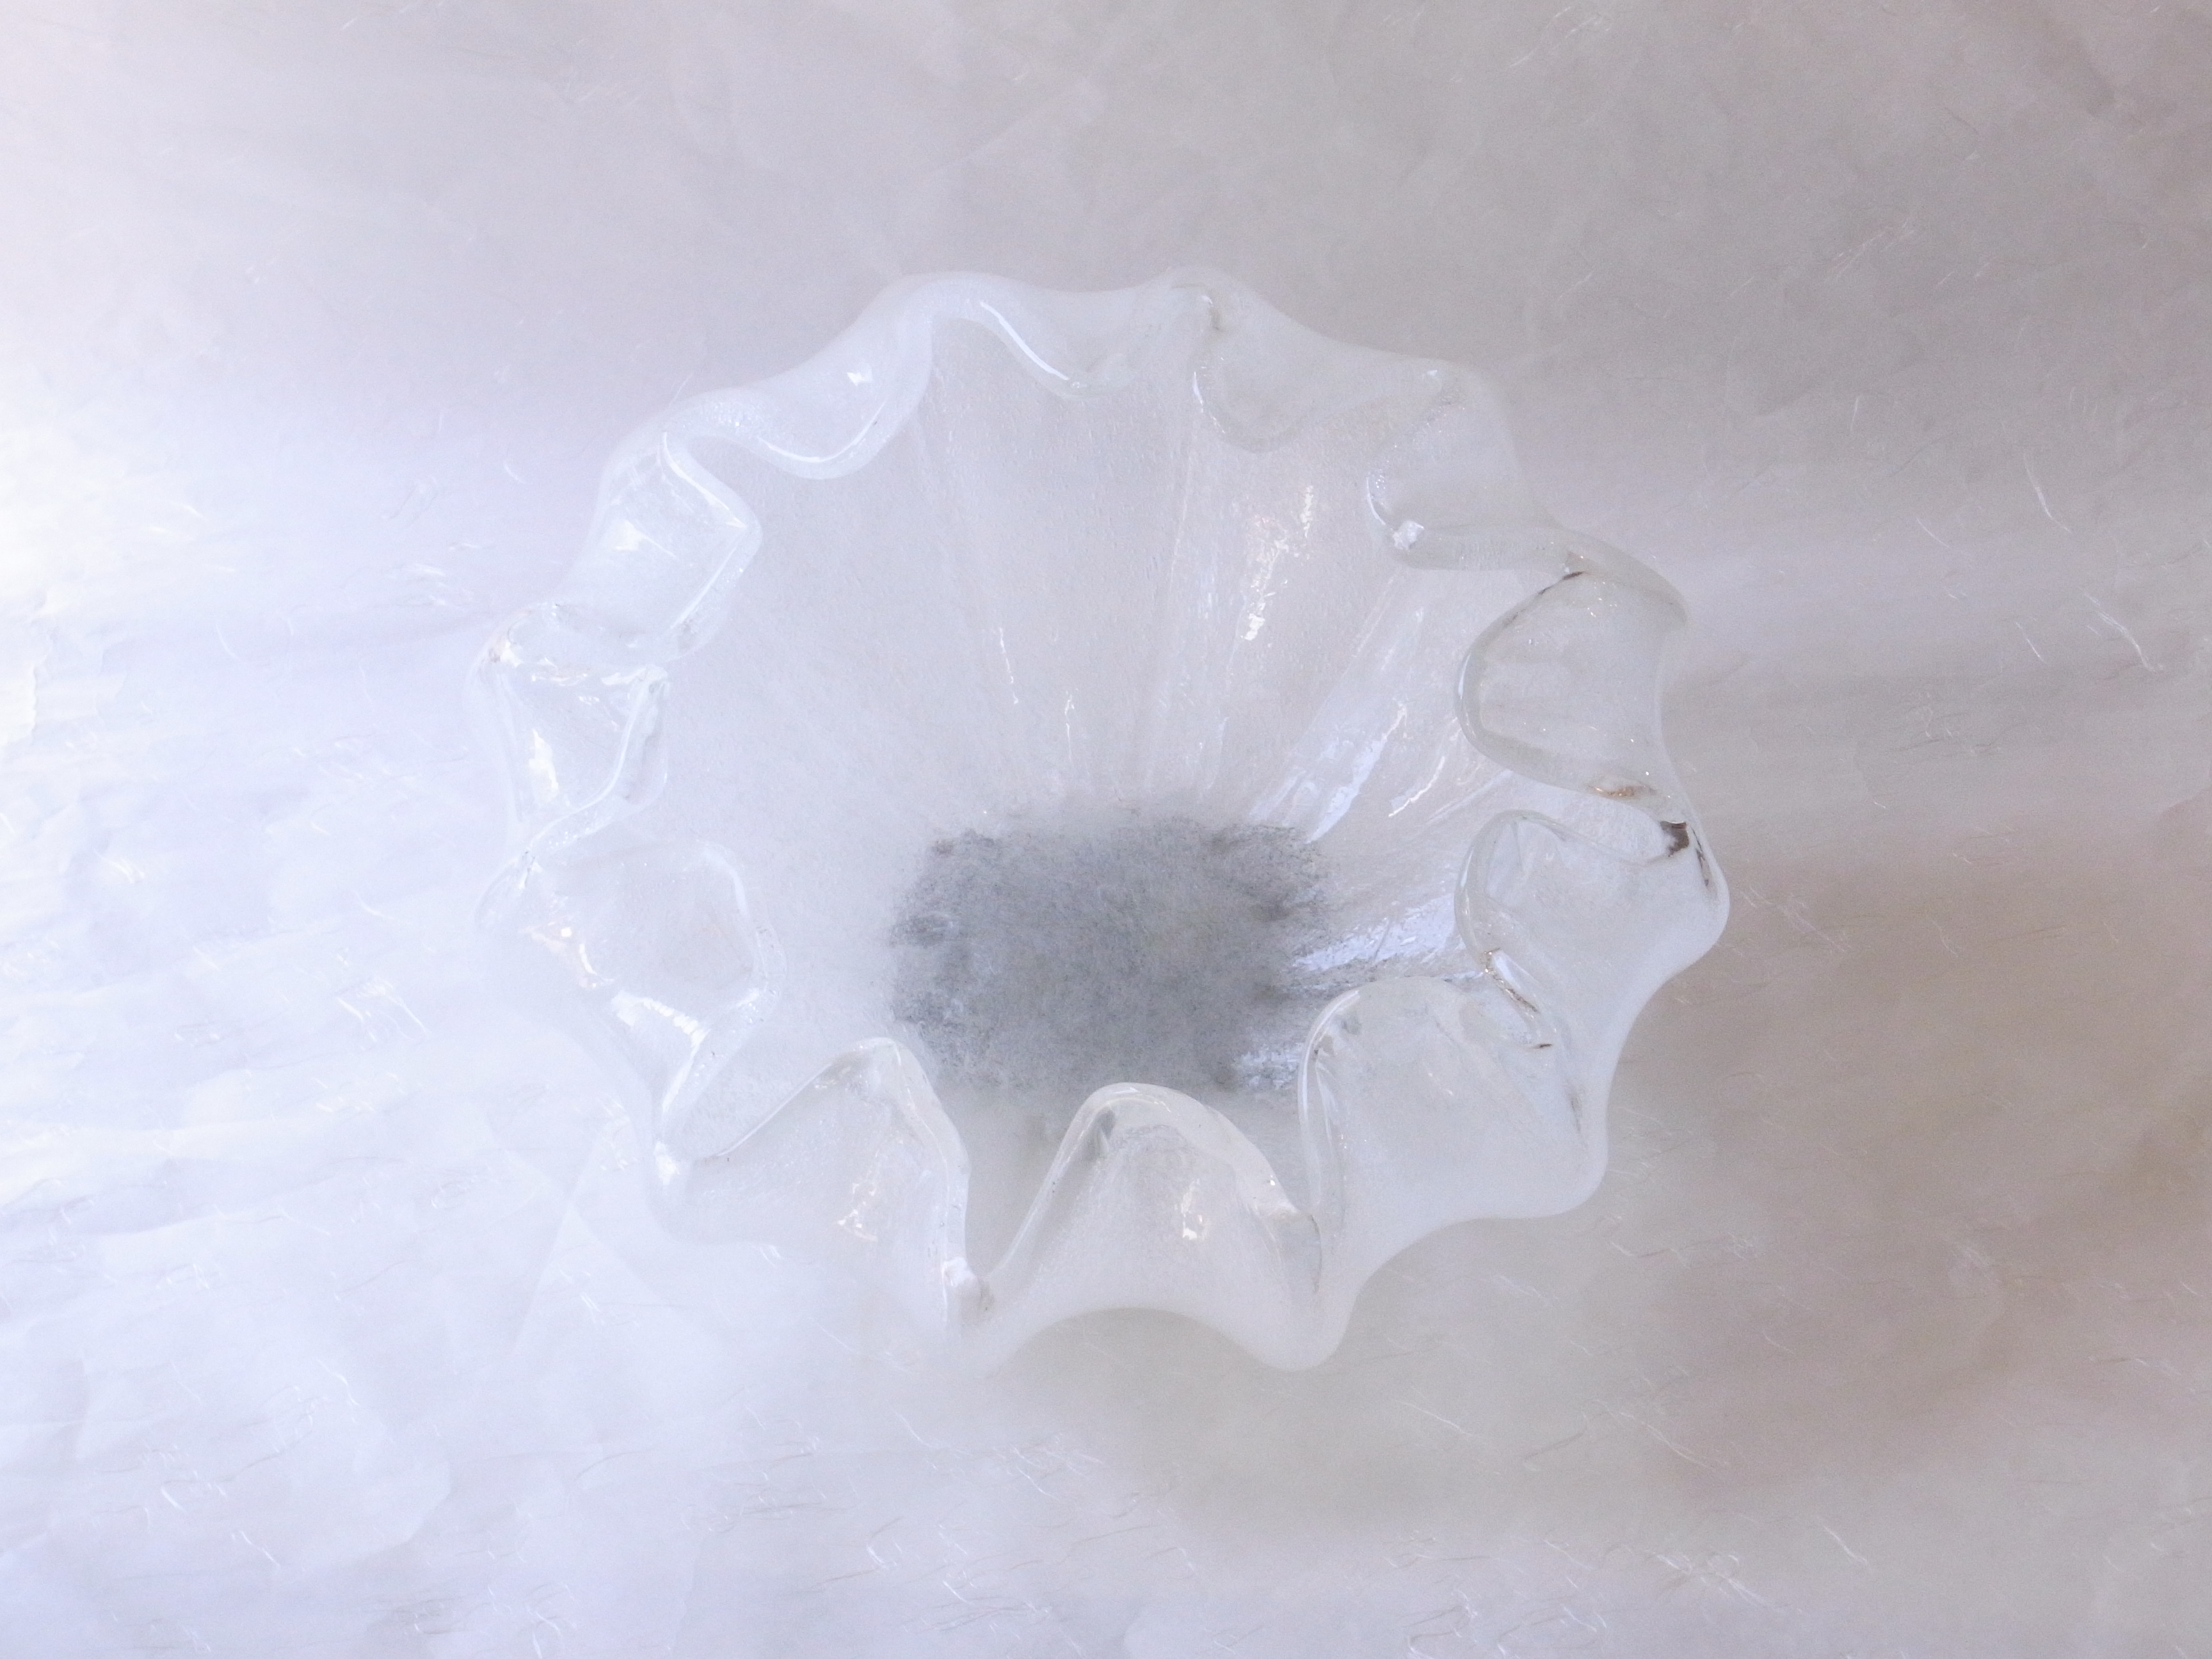 日本製　手づくりガラス　花器　花びら型　白泡　日本の職人さんが作った　つぼみから　花が開きかけている　最もいい状態　再現　ガラスを高温で熱する　熱でやわらかい内に　曲げたり　切ったり　加工しながら　花器の形　仕上げて作られる　多くの経験　熟練の技術が必要　花器の高さ　花びらの形　加工には相当の苦労が伴う　白と透明　泡の入った部分　氷のような涼しさ　無彩色　ほとんどの花を活けることが出来る　花を選ばない　様々　剣山　透明感　涼し気　存在感がある花器　日本製　陶器　磁器　陶磁器　漆器　茶道具　華道具　贈り物　ギフト　記念品　引出物　法要　お返し　専門店　リアル店舗　茶の湯　茶道　裏千家　表千家　茶会　月釜　抹茶　高品質　安らぎ　いやし　よりおいしく　安心　機能的　長持ち　人気　おすすめ　高機能　ネット通販　ネットショップ　セレクトショップ　欲しい　購入　買う　買い物　岐阜県　岐阜市　美殿町　小林漆陶　特別な　選び抜かれた　品質重視　使いやすい　格安　老舗　誕生日　結婚　出産　入学　退職　母の日　父の日　敬老の日　クリスマス　プレゼント　叙勲　長寿　新築　お祝い　御礼　内祝い　外国土産　海外みやげ　実店舗　創業１００年以上　使うと分かる　職人技 日本一の品揃え　日本一の在庫数　専門店　専門知識　数万点の在庫　百貨店（高島屋　三越　伊勢丹　松坂屋　大丸）にない　手作り　お洒落　高級品　希少価値　上質な器 伝統工芸品　コスパ　お値打ち　お買い得　堅牢　飽きない　永く使える　お気に入り　国産　料理が映える　満足感　豊かな食生活　豊かな食文化　こだわりの器　日本文化　他にない　ここにしかない　オリジナル　独自の　個性的　ここでしか買えない　超レアもの　一品もの　現品限り　入手困難　いい器　匠の技　美しい　実用的　外人が喜ぶ店　外人が珍しがる店　外人がうれしい店　日本各地の一級品を売る店　日本全国の器を売る店　本当にいいもの コスパ高い　一流品　修理　選りすぐりの逸品　周年記念　永年勤続表彰　退職記念　卒業記念　日本土産　岐阜土産　岐阜のおみやげ　岐阜の特産品　料理を引き立てる器　高級店　一流店　岐阜で一番　東海で一番　中部で一番　日本で一番　おしゃれな店　地域一番店　実店舗　陶磁器　磁器　華道具　ガラス器　明治４２年創業　有田焼　清水焼　美濃焼　赤津焼　万古焼　常滑焼　九谷焼　唐津焼　萩焼　信楽焼　万古焼　砥部焼　備前焼　丹波焼　山中塗　春慶塗　讃岐塗　越前塗　輪島塗　紀州塗　会津塗　小田原木工　桜皮細工　秋田杉　駿河竹細工　七宝焼　南部鉄器　錫製品　江戸切子　津軽びいどろ　　　